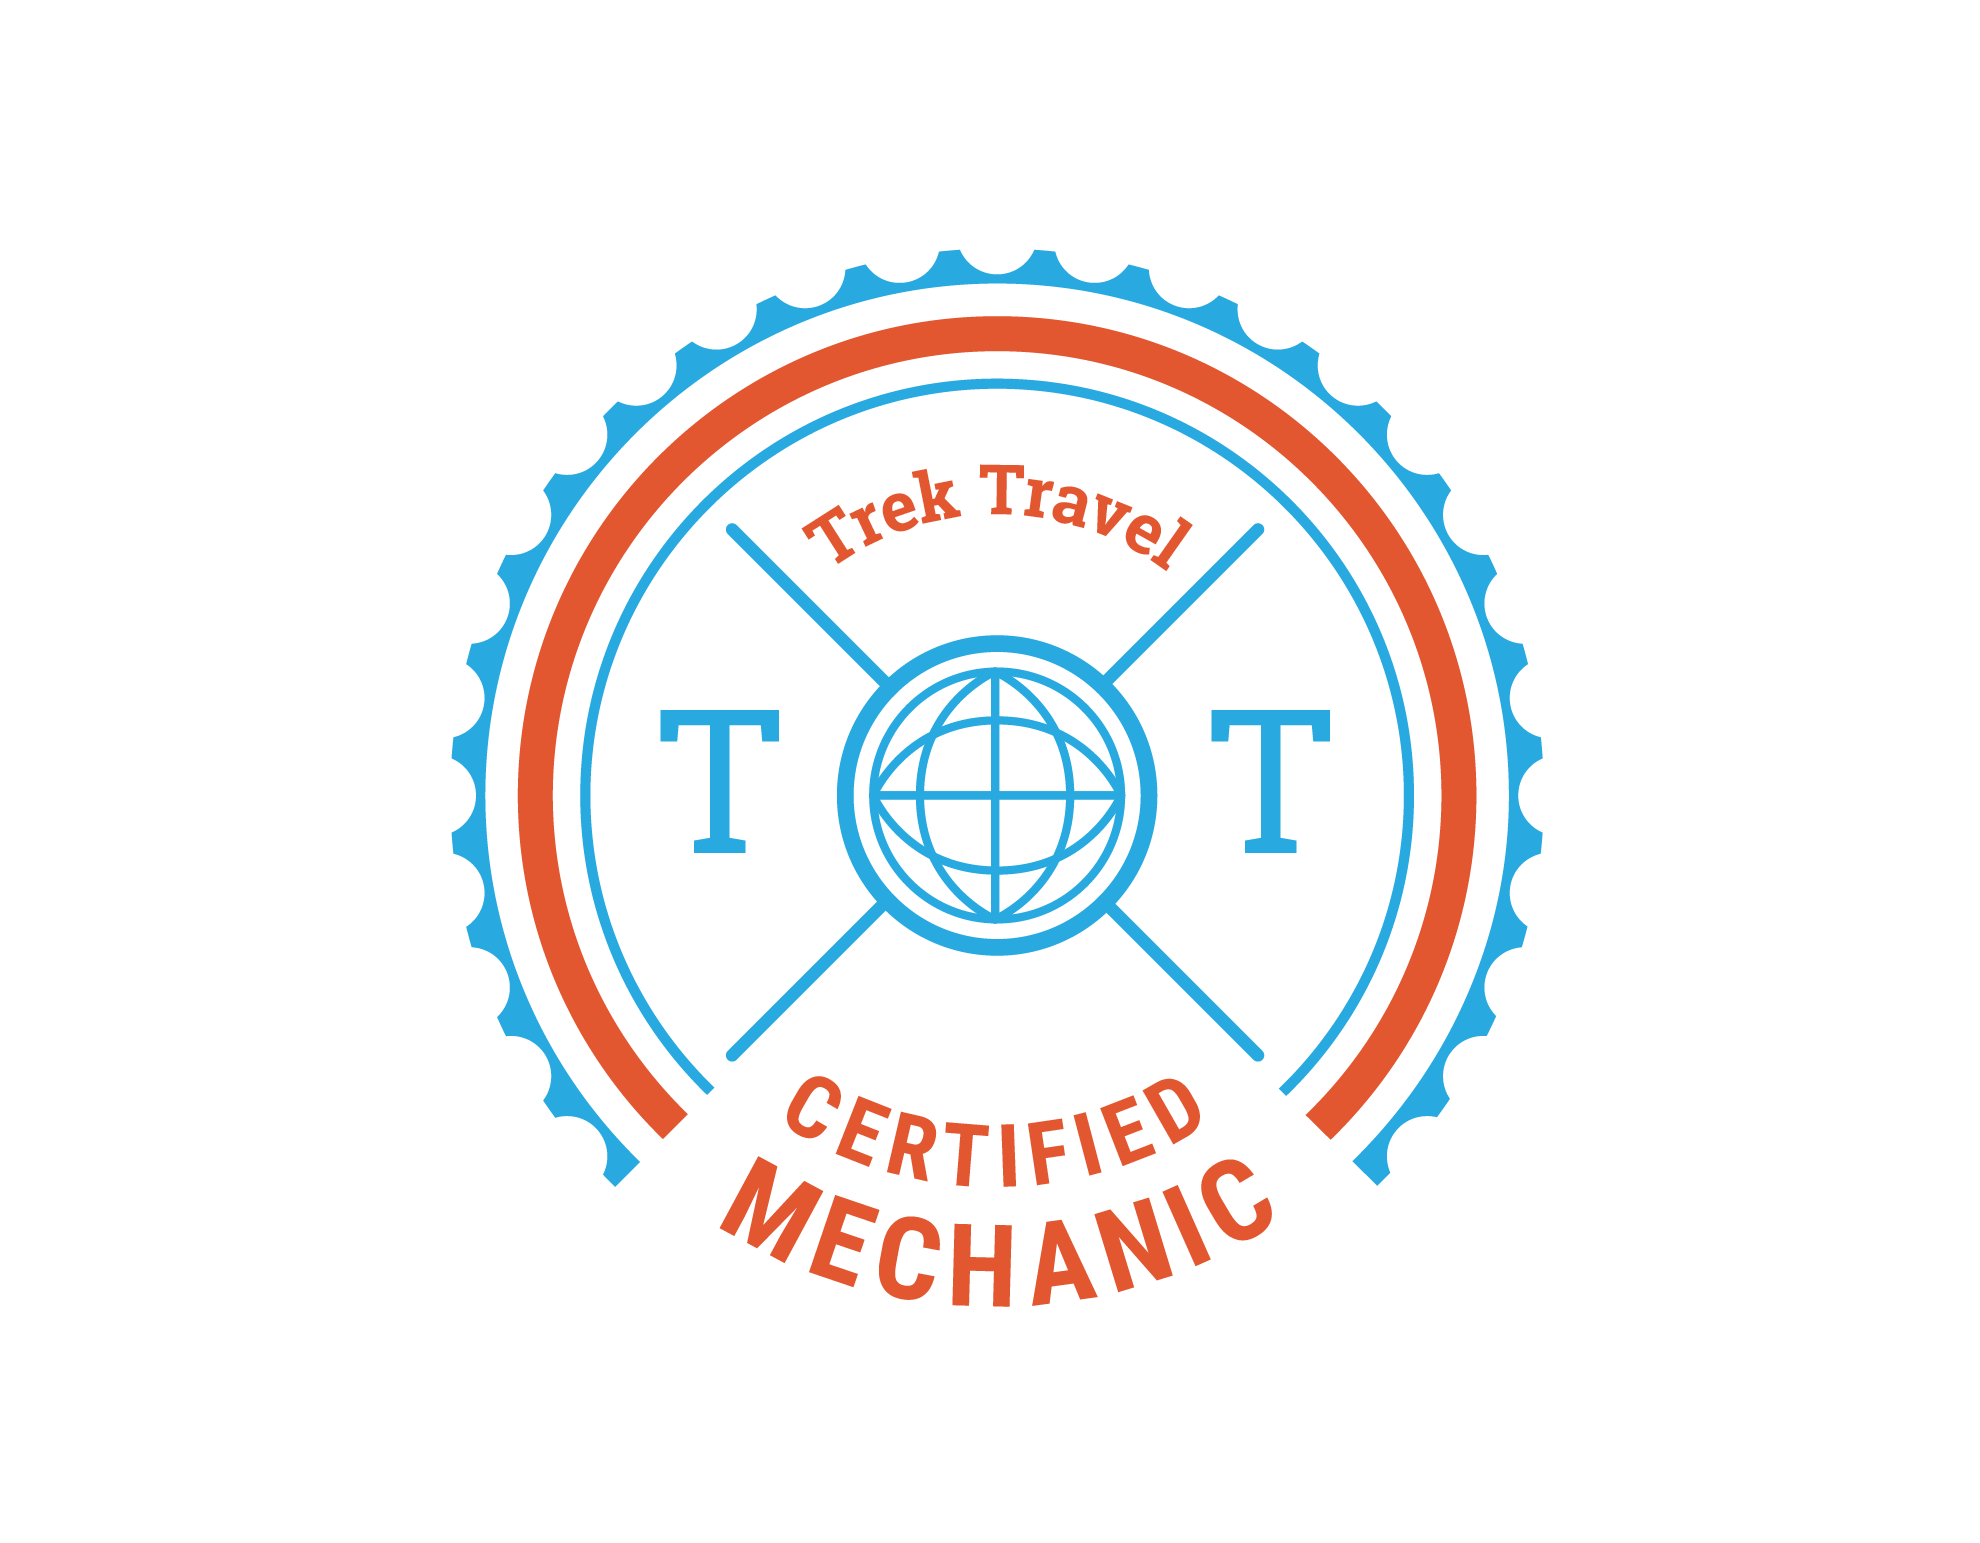 Trek Travel Certified Mechanics